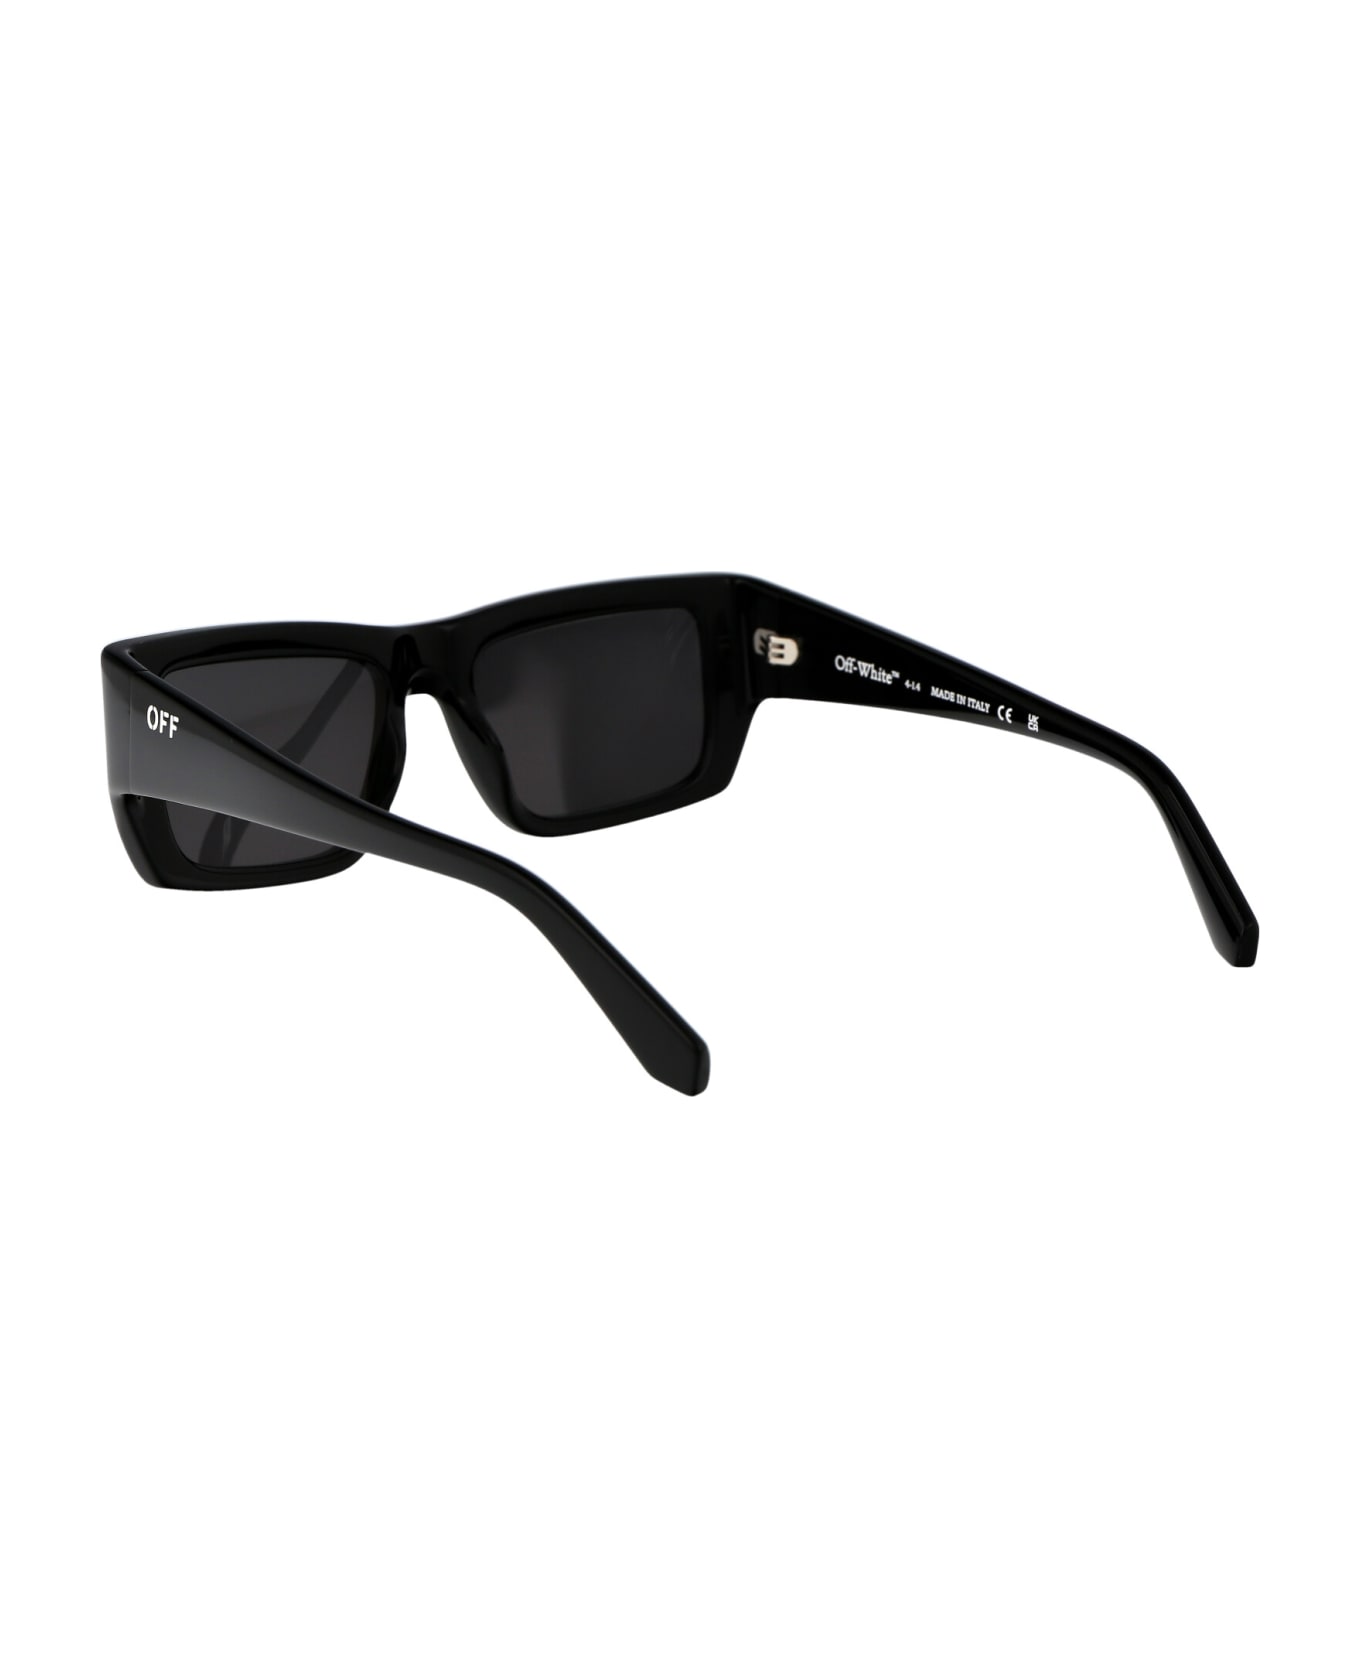 Off-White Prescott Sunglasses - 1007 BLACK